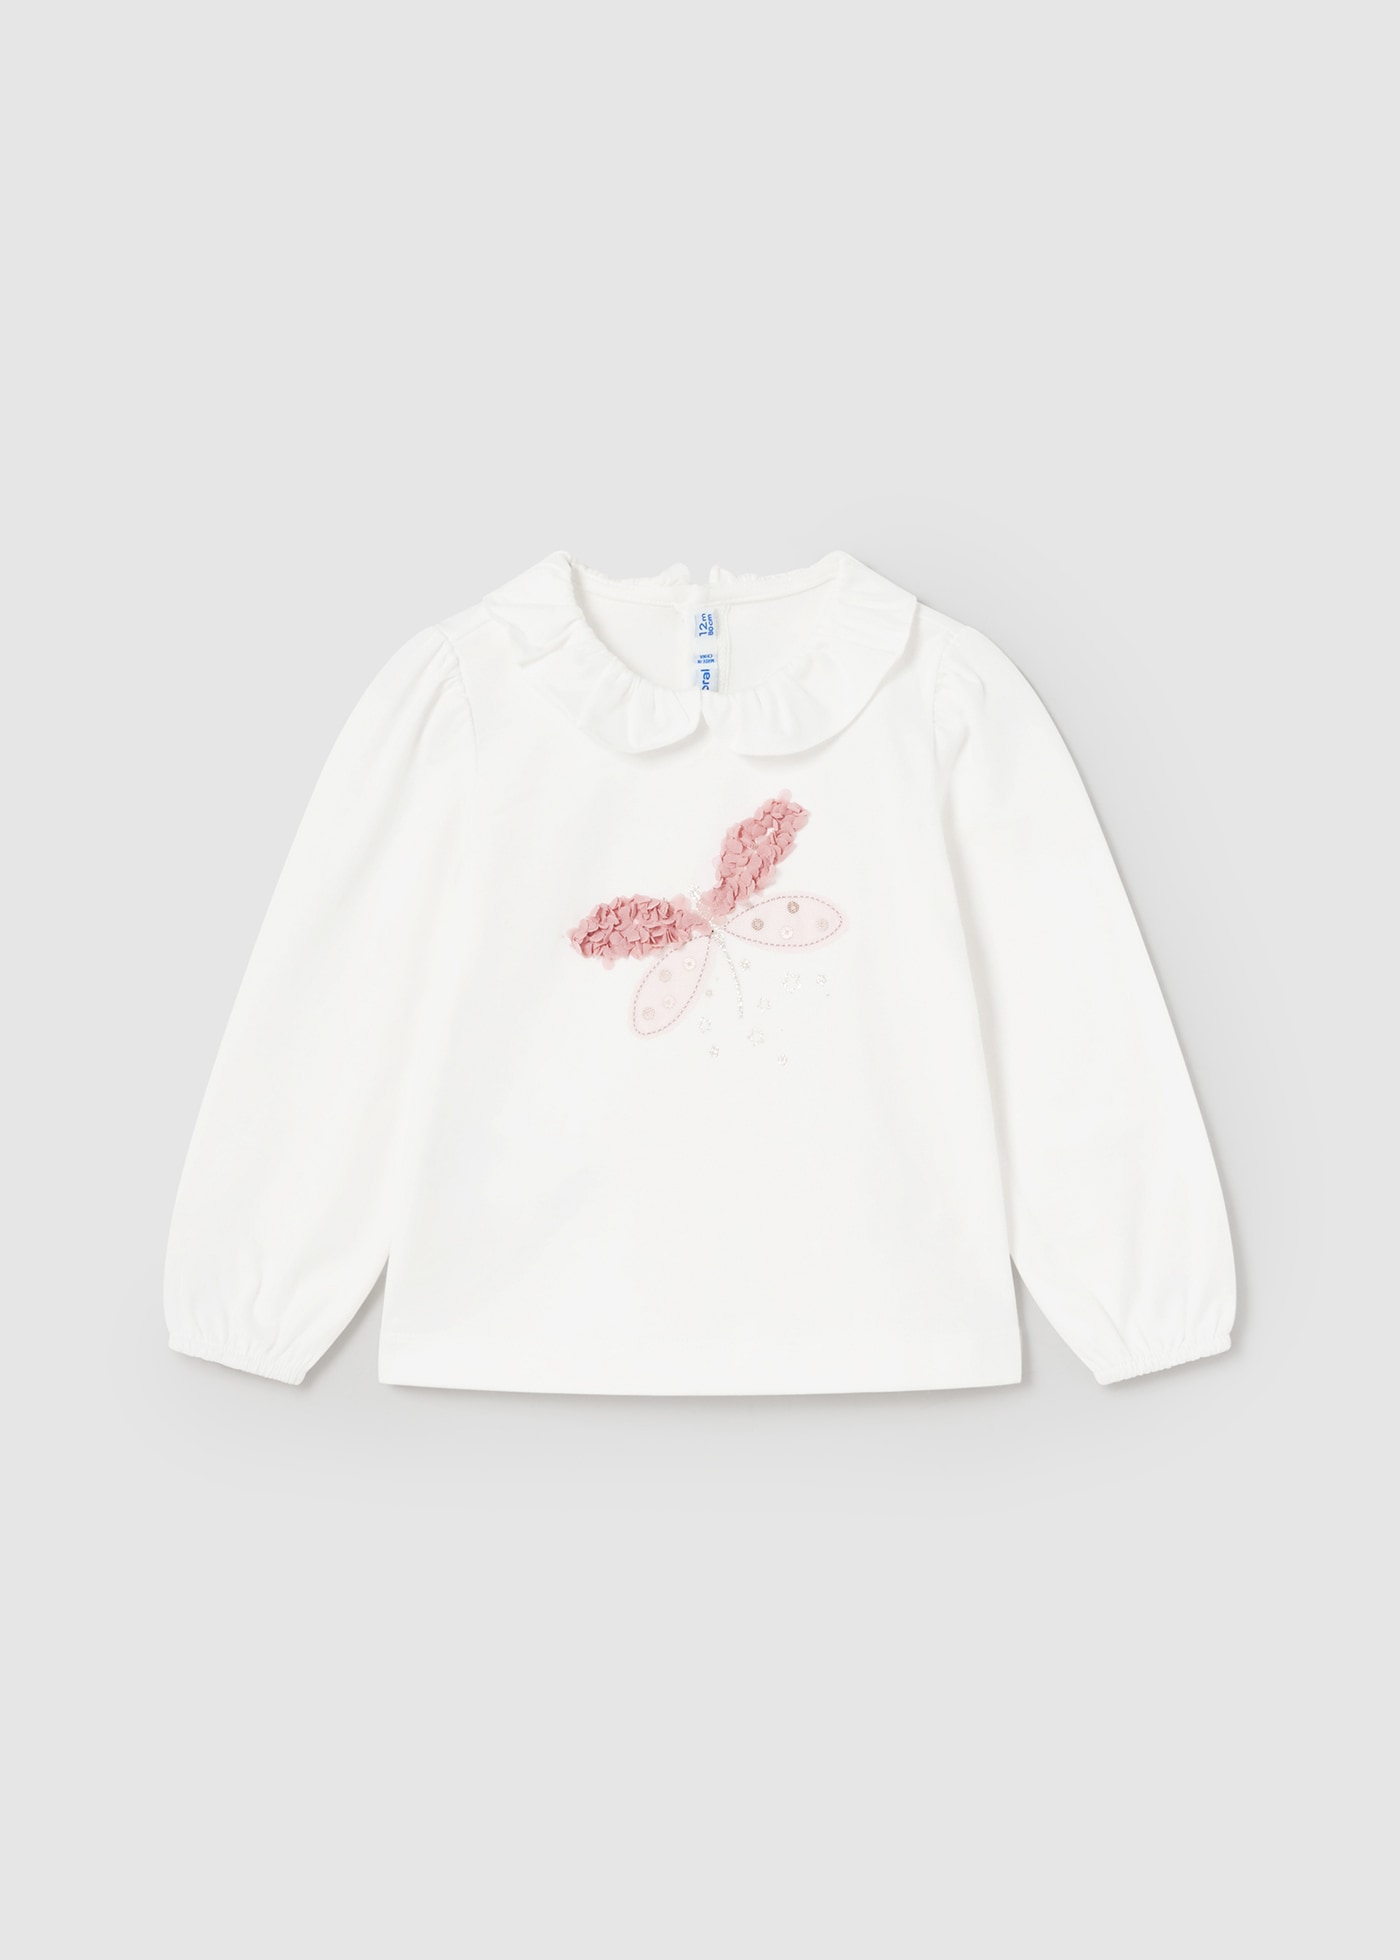 Camiseta vestir libélula bebé